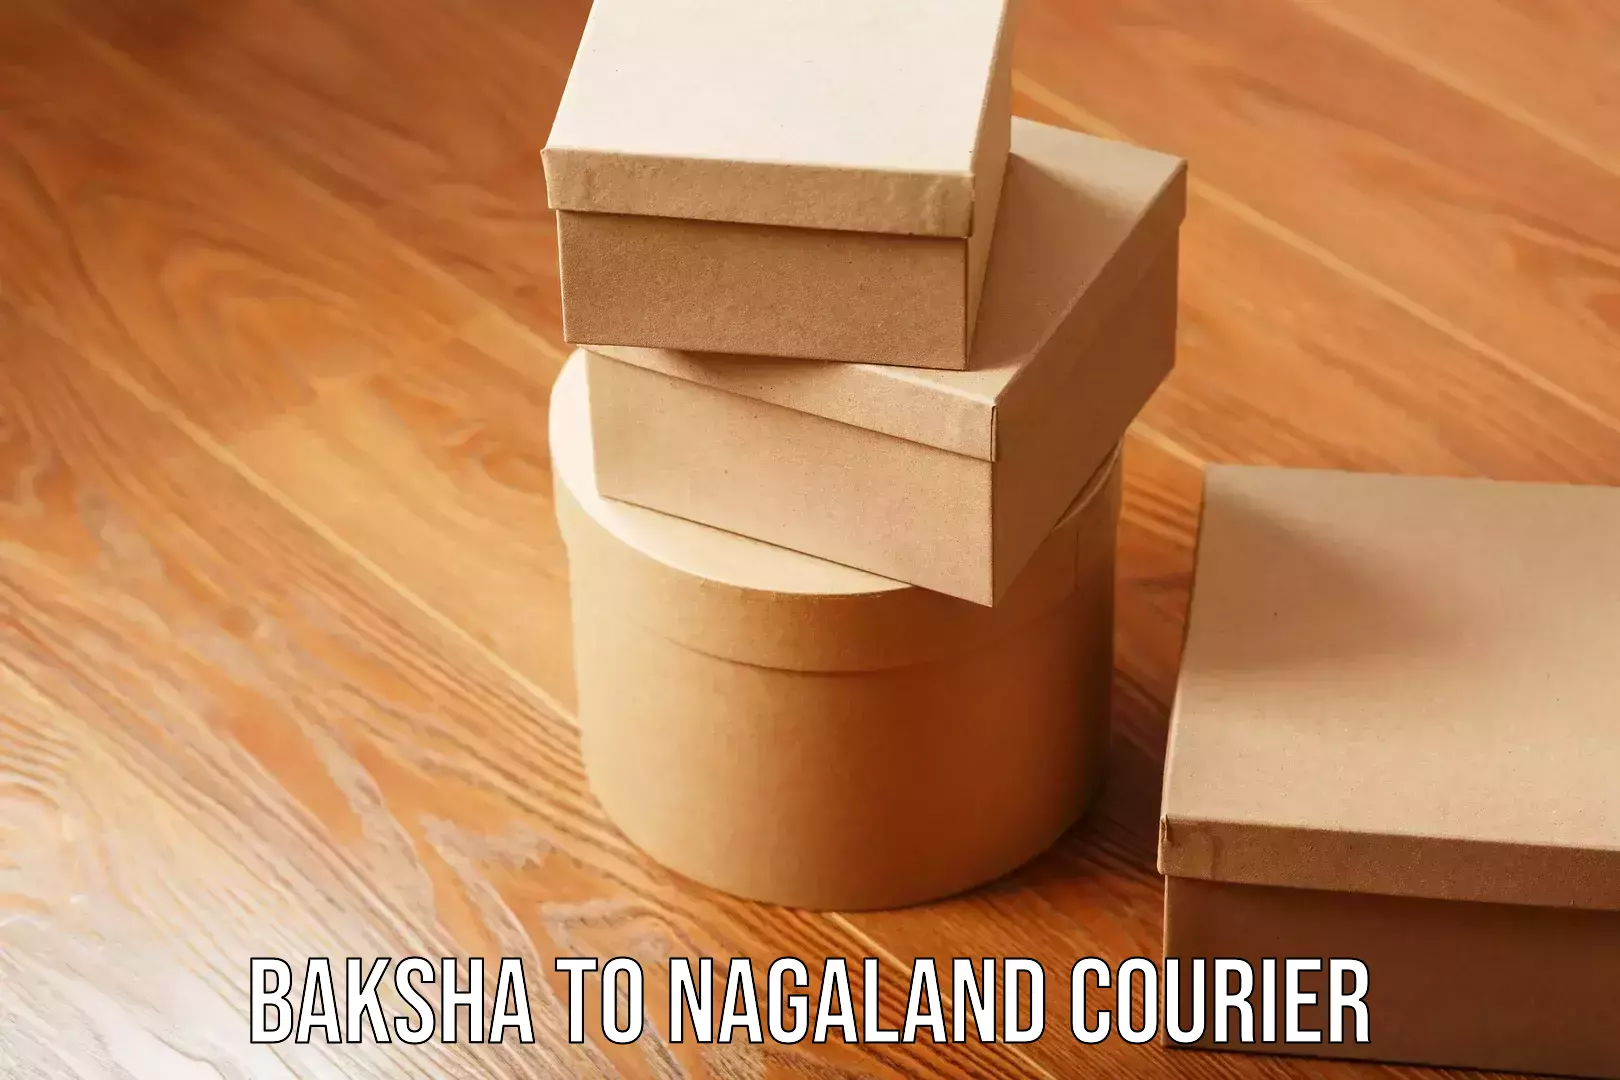 Business delivery service Baksha to Nagaland